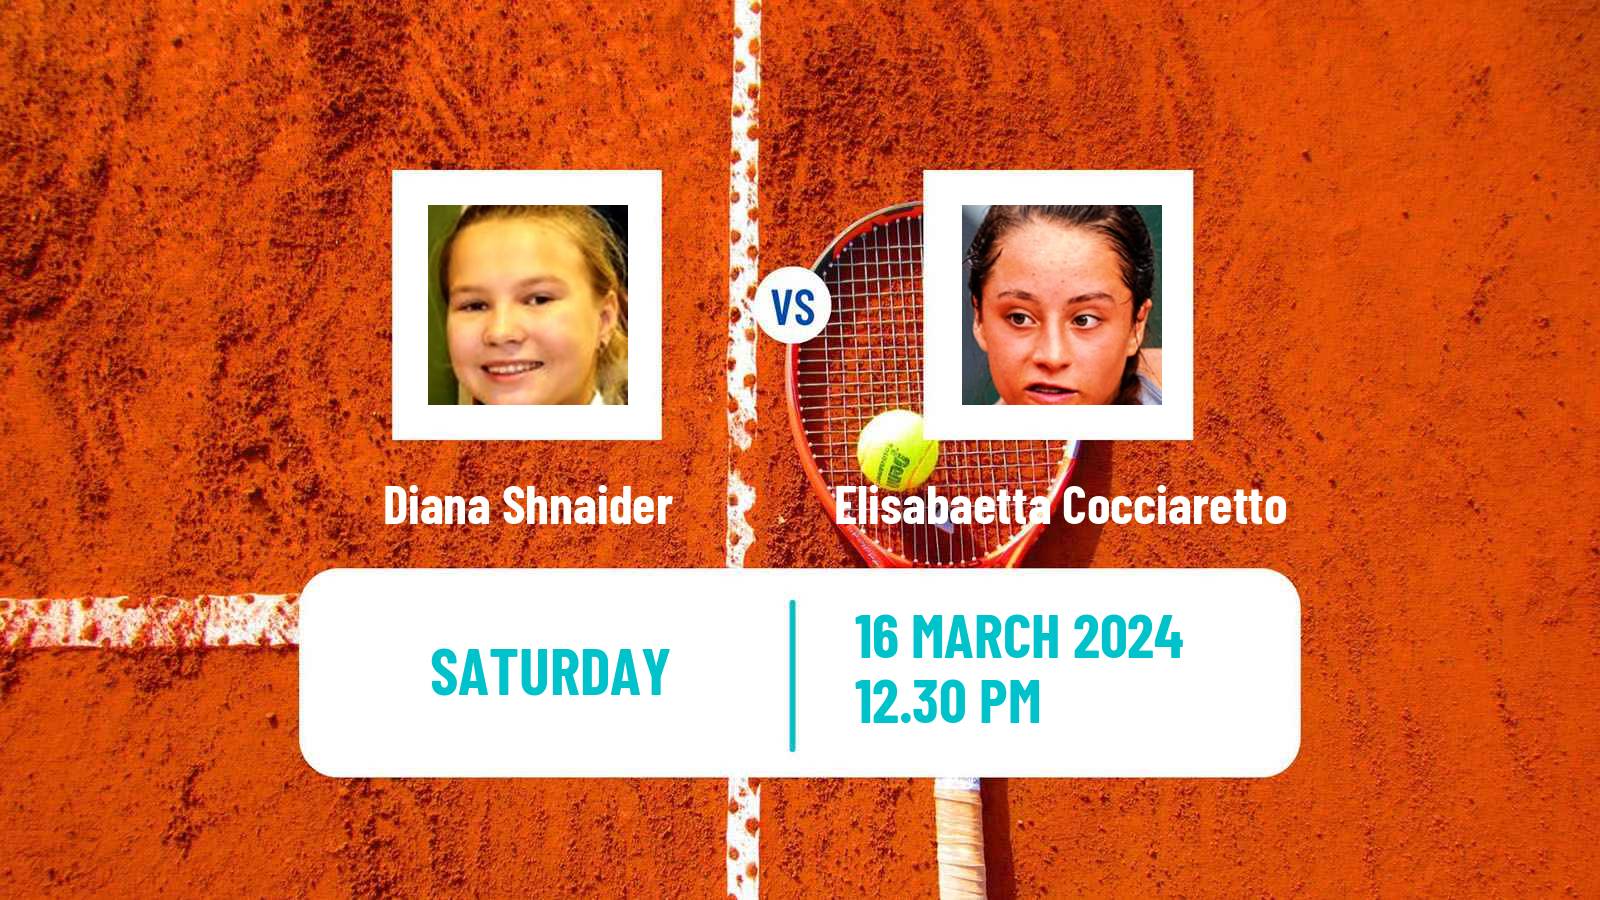 Tennis Charleston Challenger Women Diana Shnaider - Elisabaetta Cocciaretto